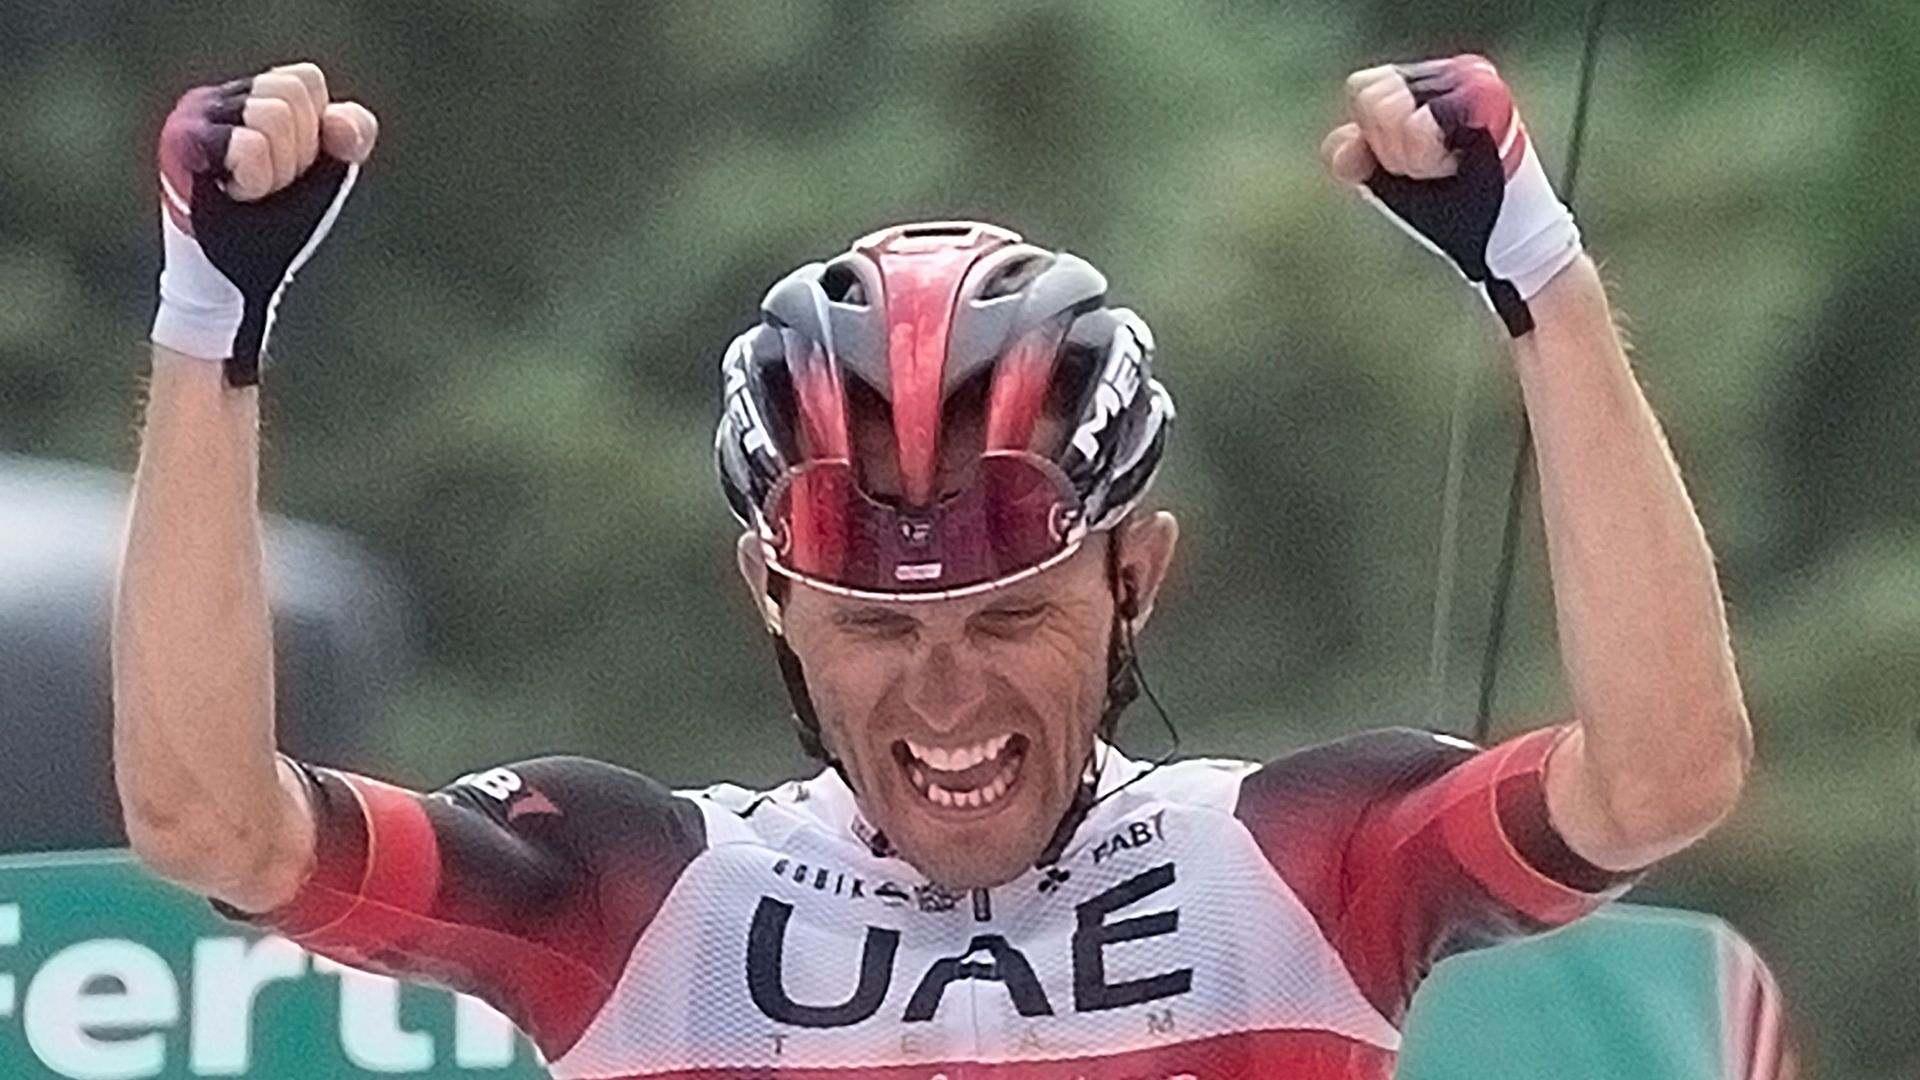 Cyclisme : Rafal Majka s’est adjugé la première étape du Tour de Slovénie (2.Pro), mercredi, entre Nova Gorica et Postojna (164.7km). Le Polonais a devancé ses deux compagnons d’échappée slovènes, Domen Novak (Bahrain-Victorious) et son équipier Tadej Pog